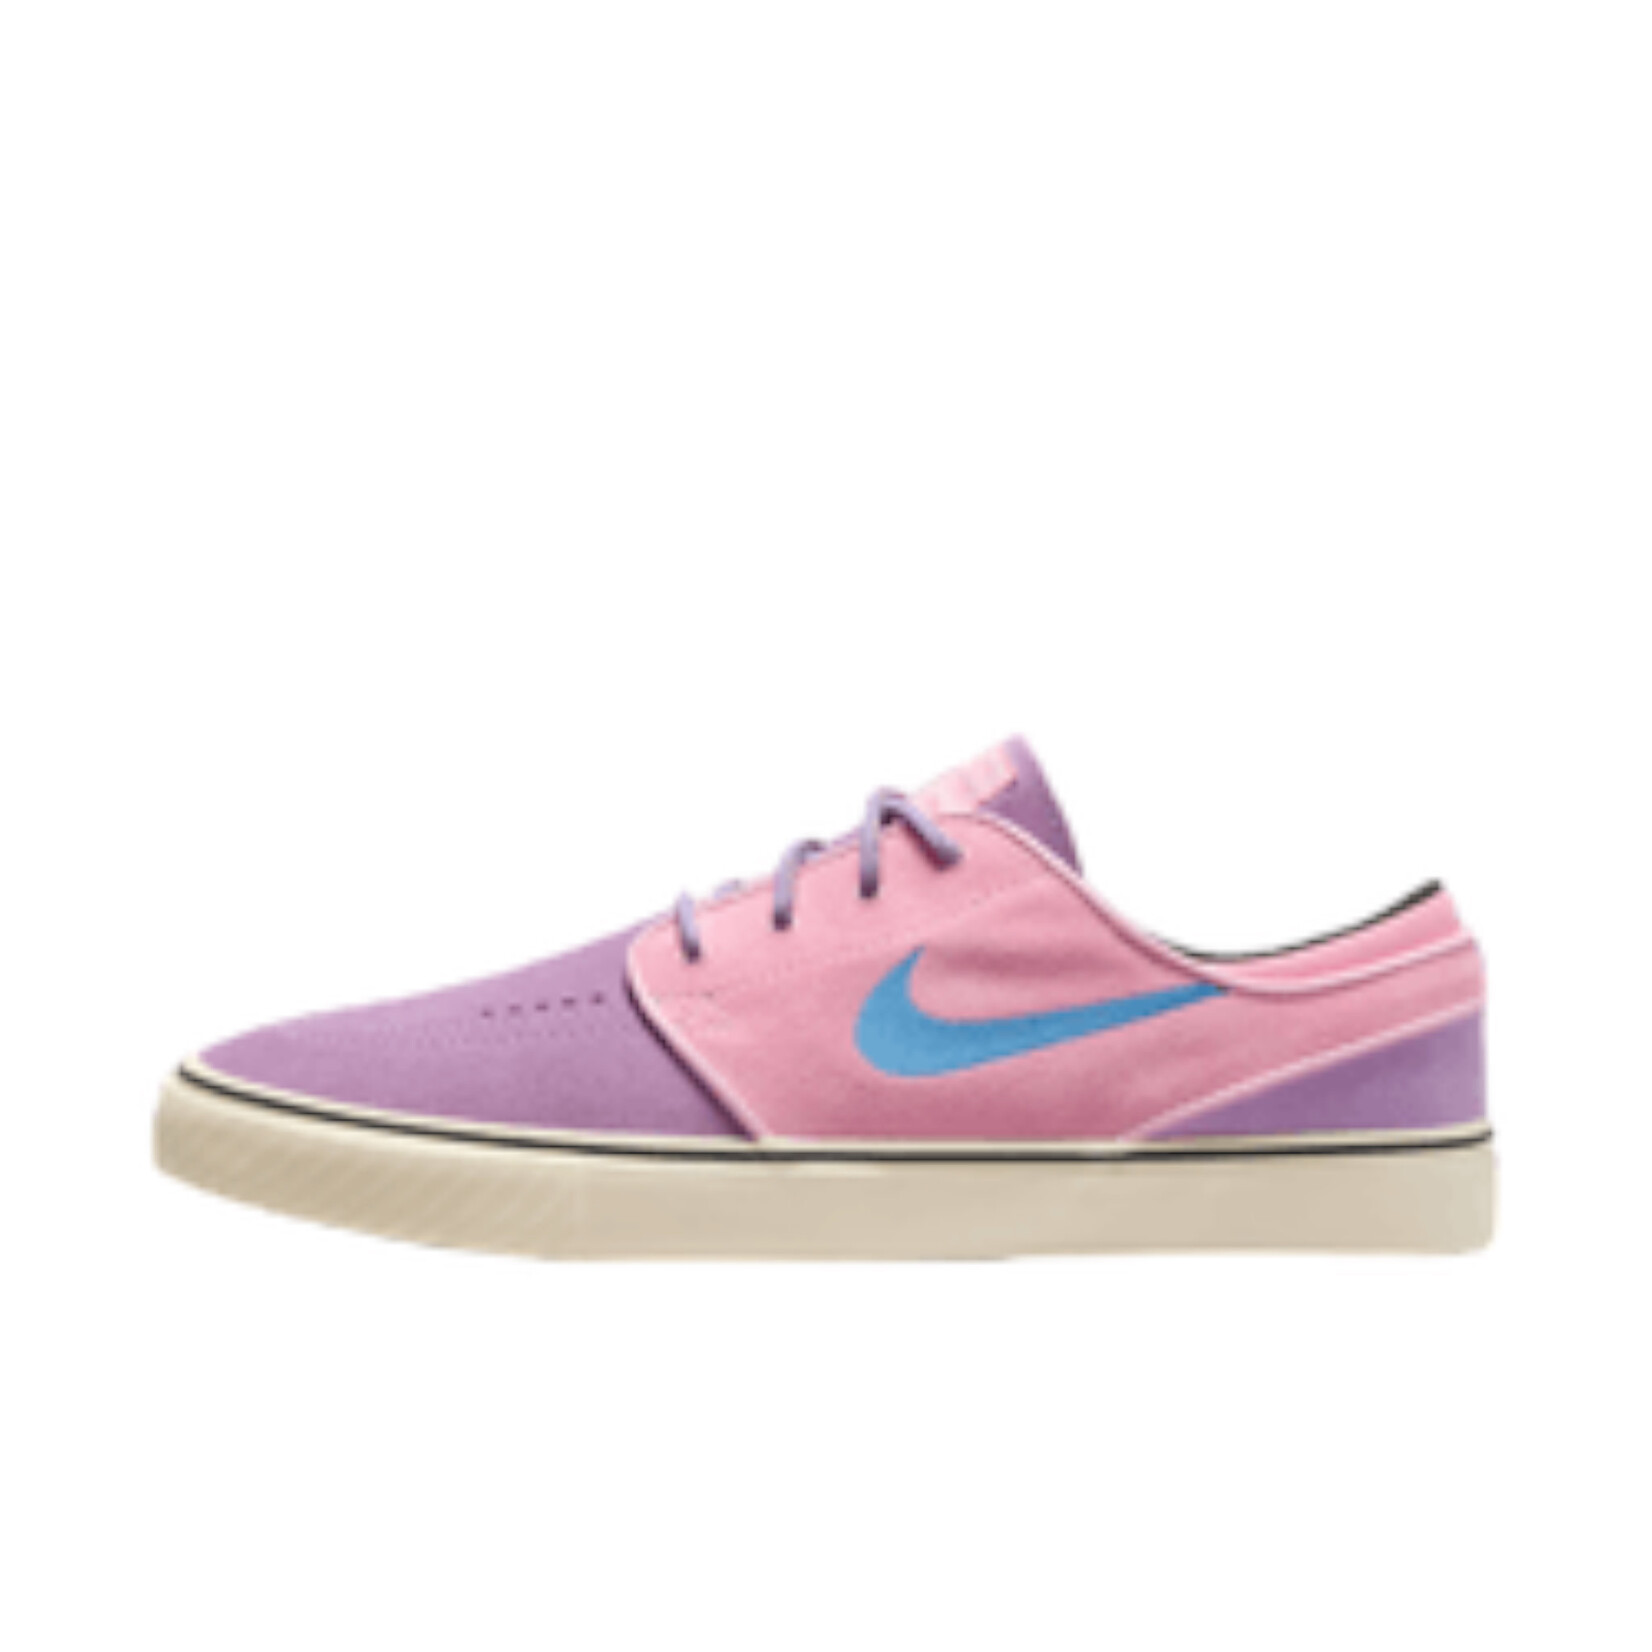 Nike SB Nike SB Janoski OG+ Lilac/ Noise Aqua-Medium Soft Pink